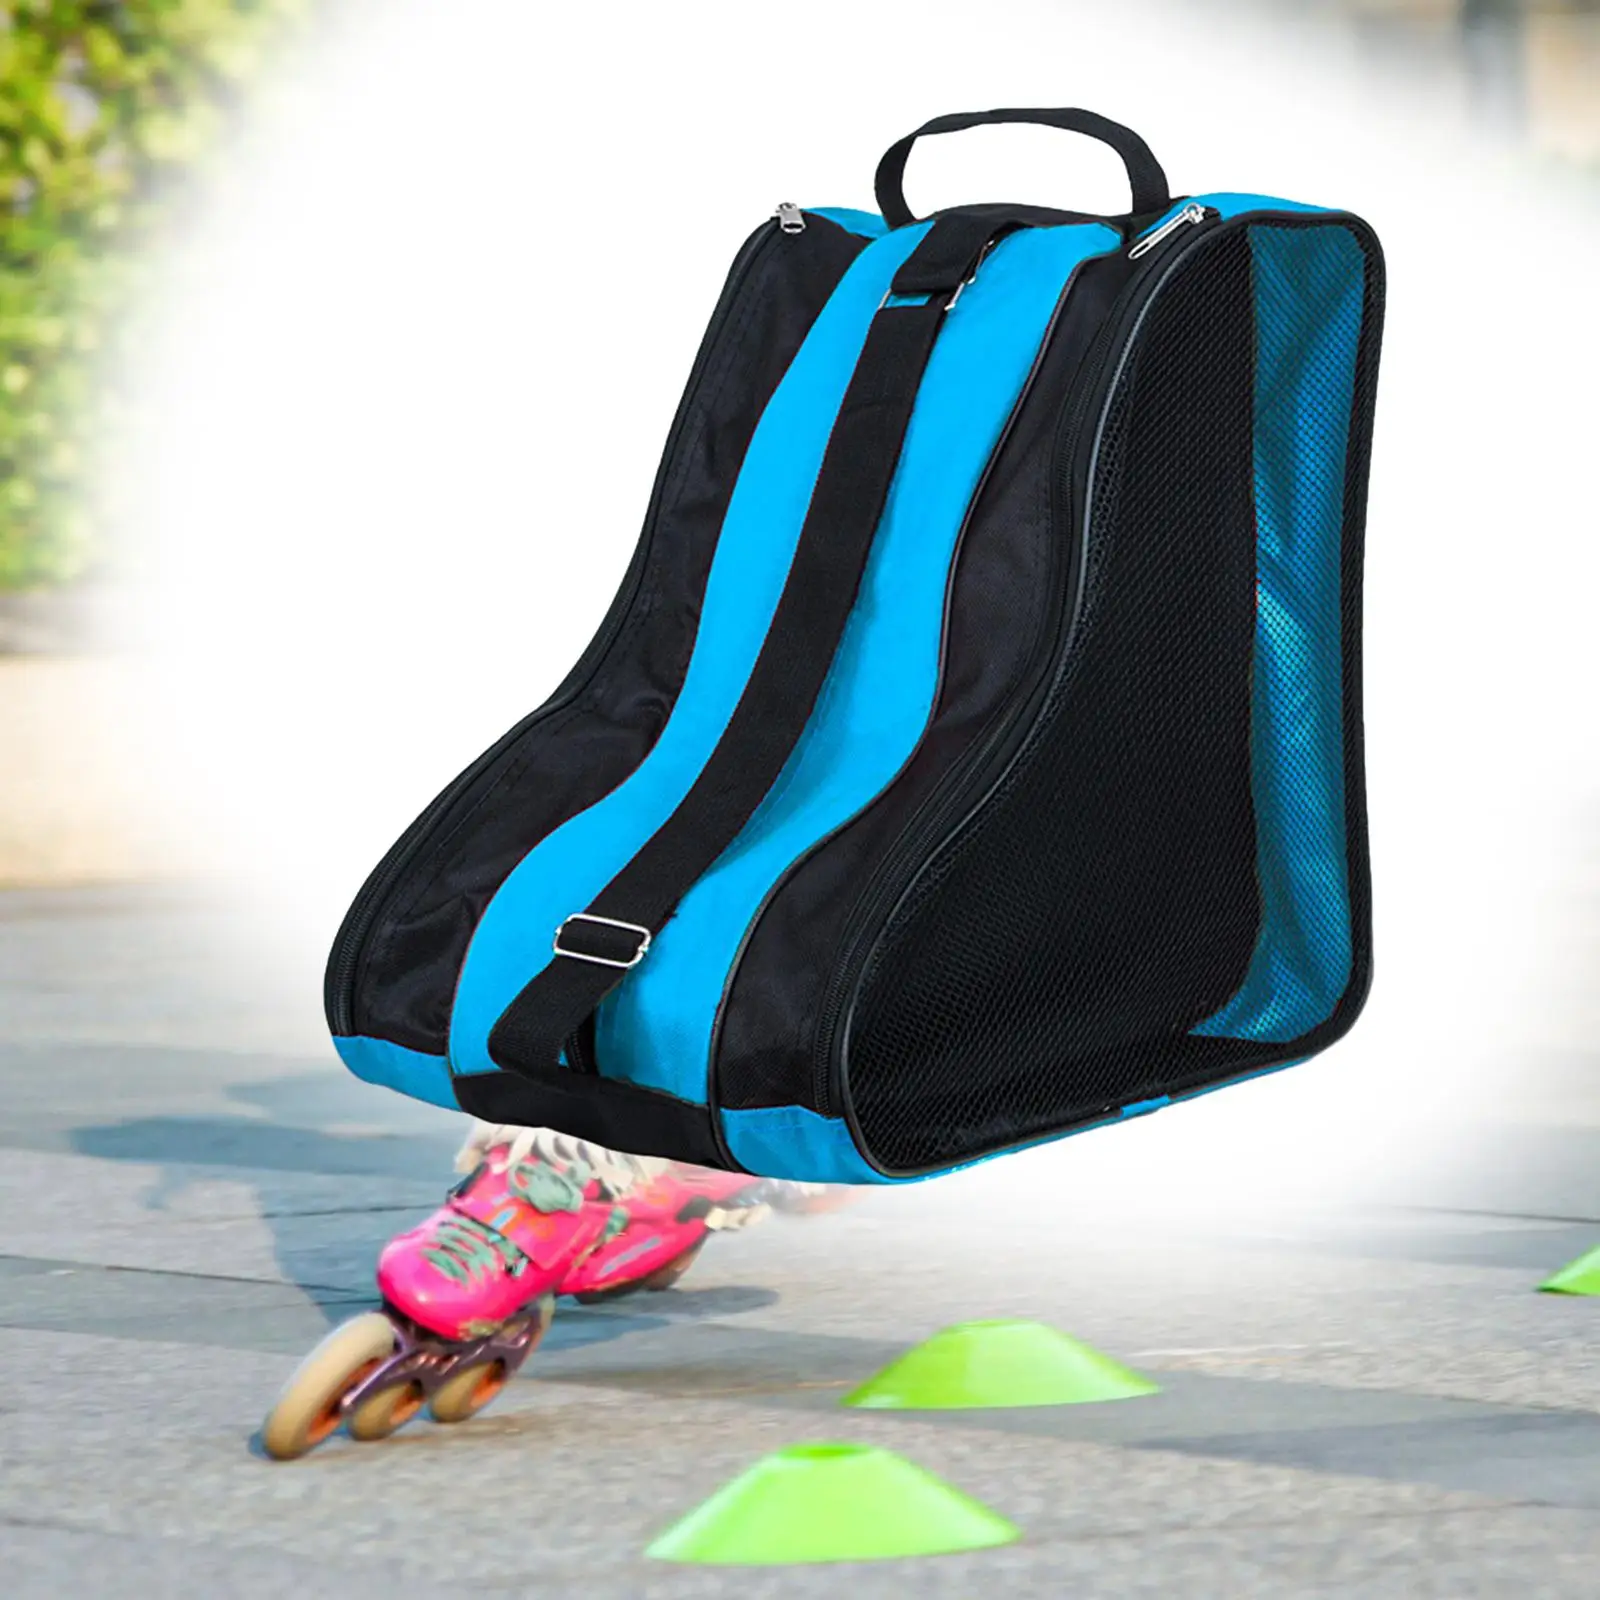 Roller Skate Bag with Adjustable Shoulder Strap Accessories Skate Carry Bag Skating Shoes Storage Bag Roller Skate Carrier